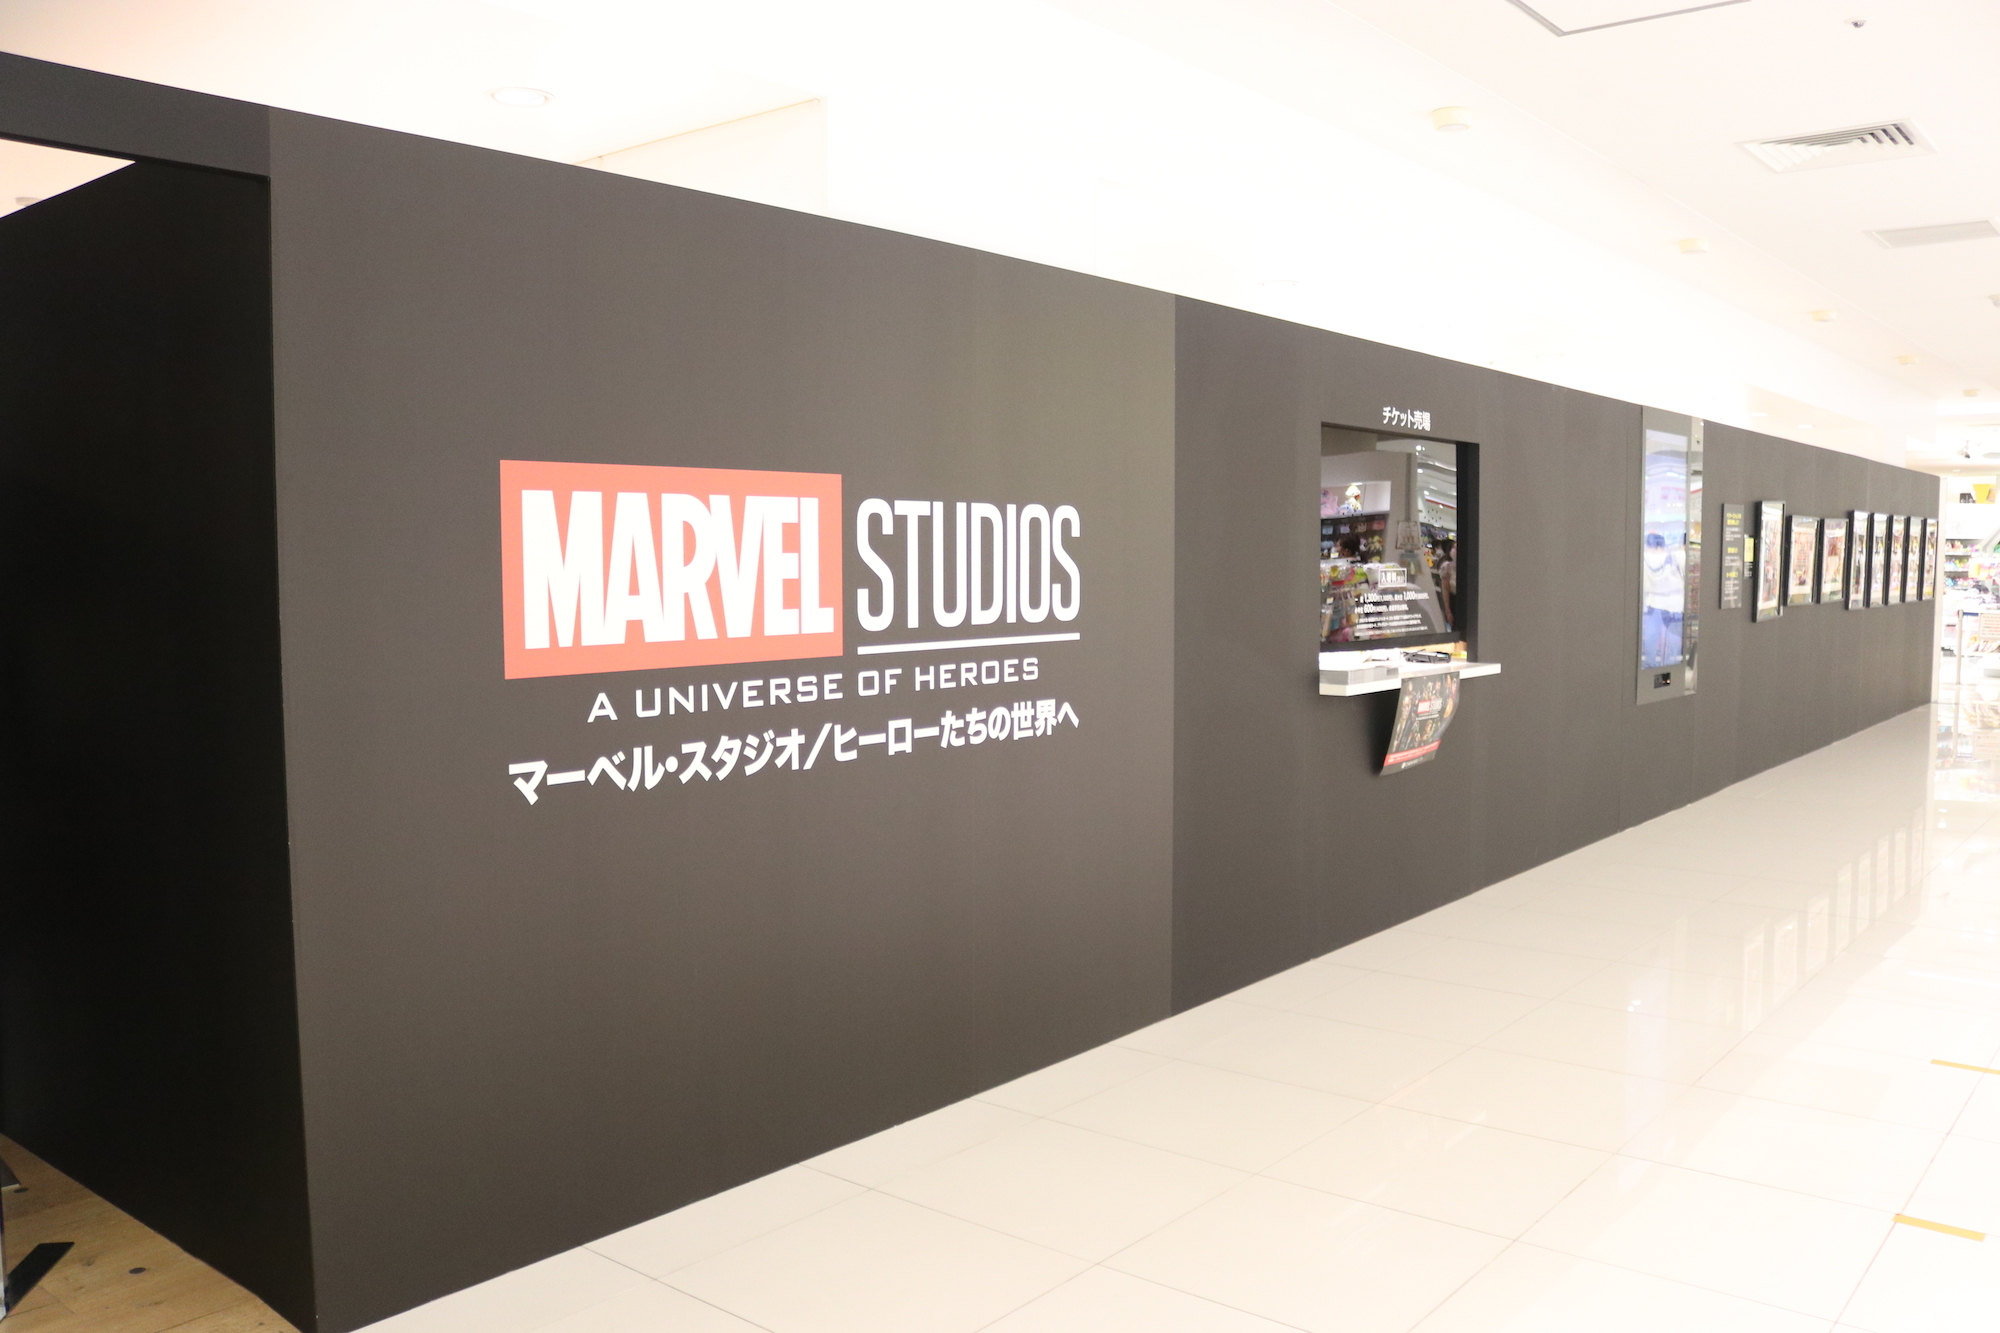 アイアンマンやキャプテン アメリカたちの世界観が体感できるイベント マーベル スタジオ ヒーローたちの世界へ が日本初上陸 Spice エンタメ特化型情報メディア スパイス